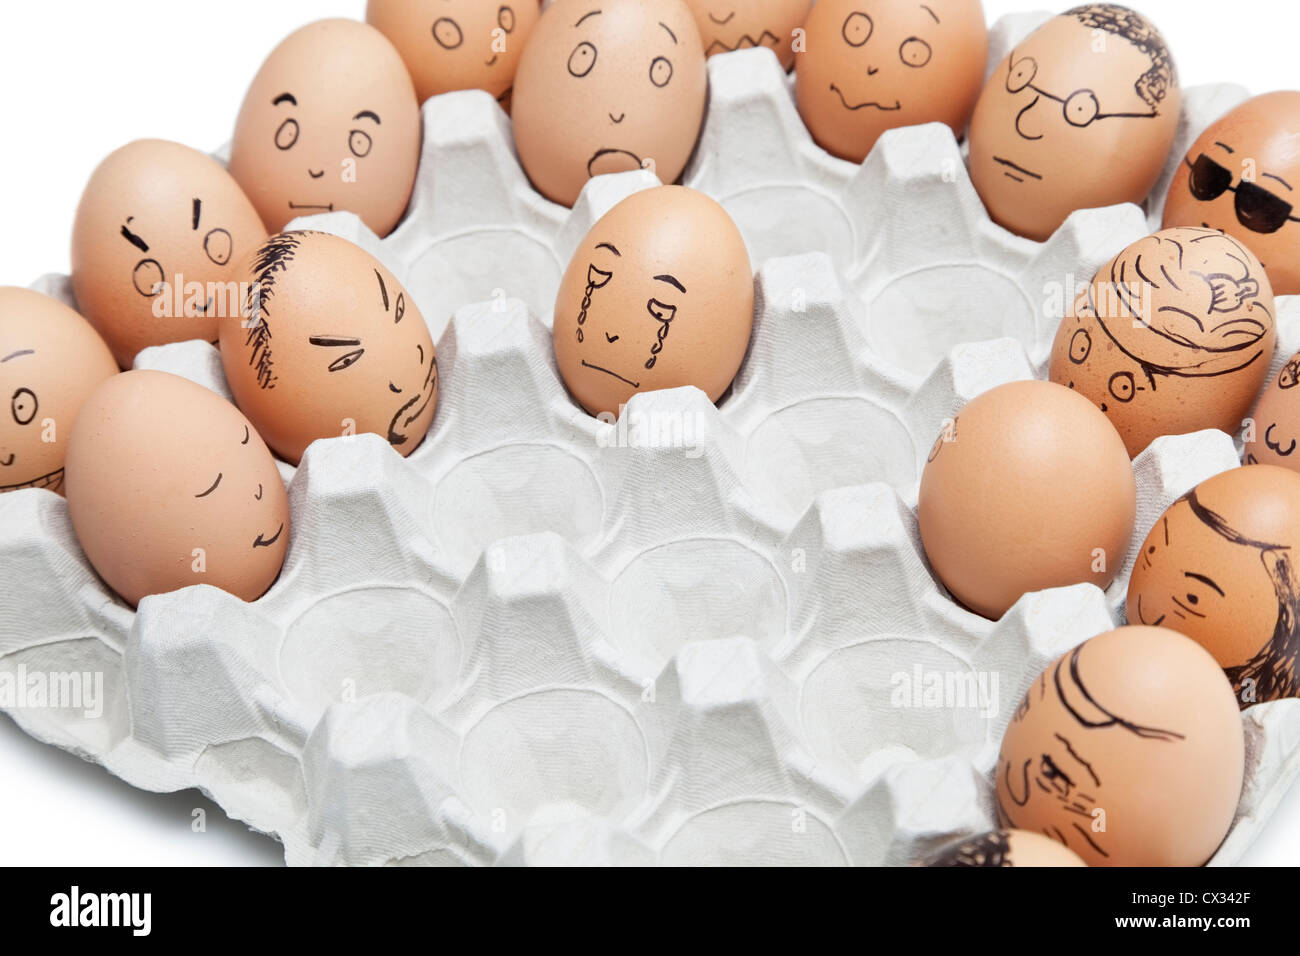 Vielfalt von Gesichtsausdrücken auf braunen Eiern angeordnet im Karton gemalt Stockfoto